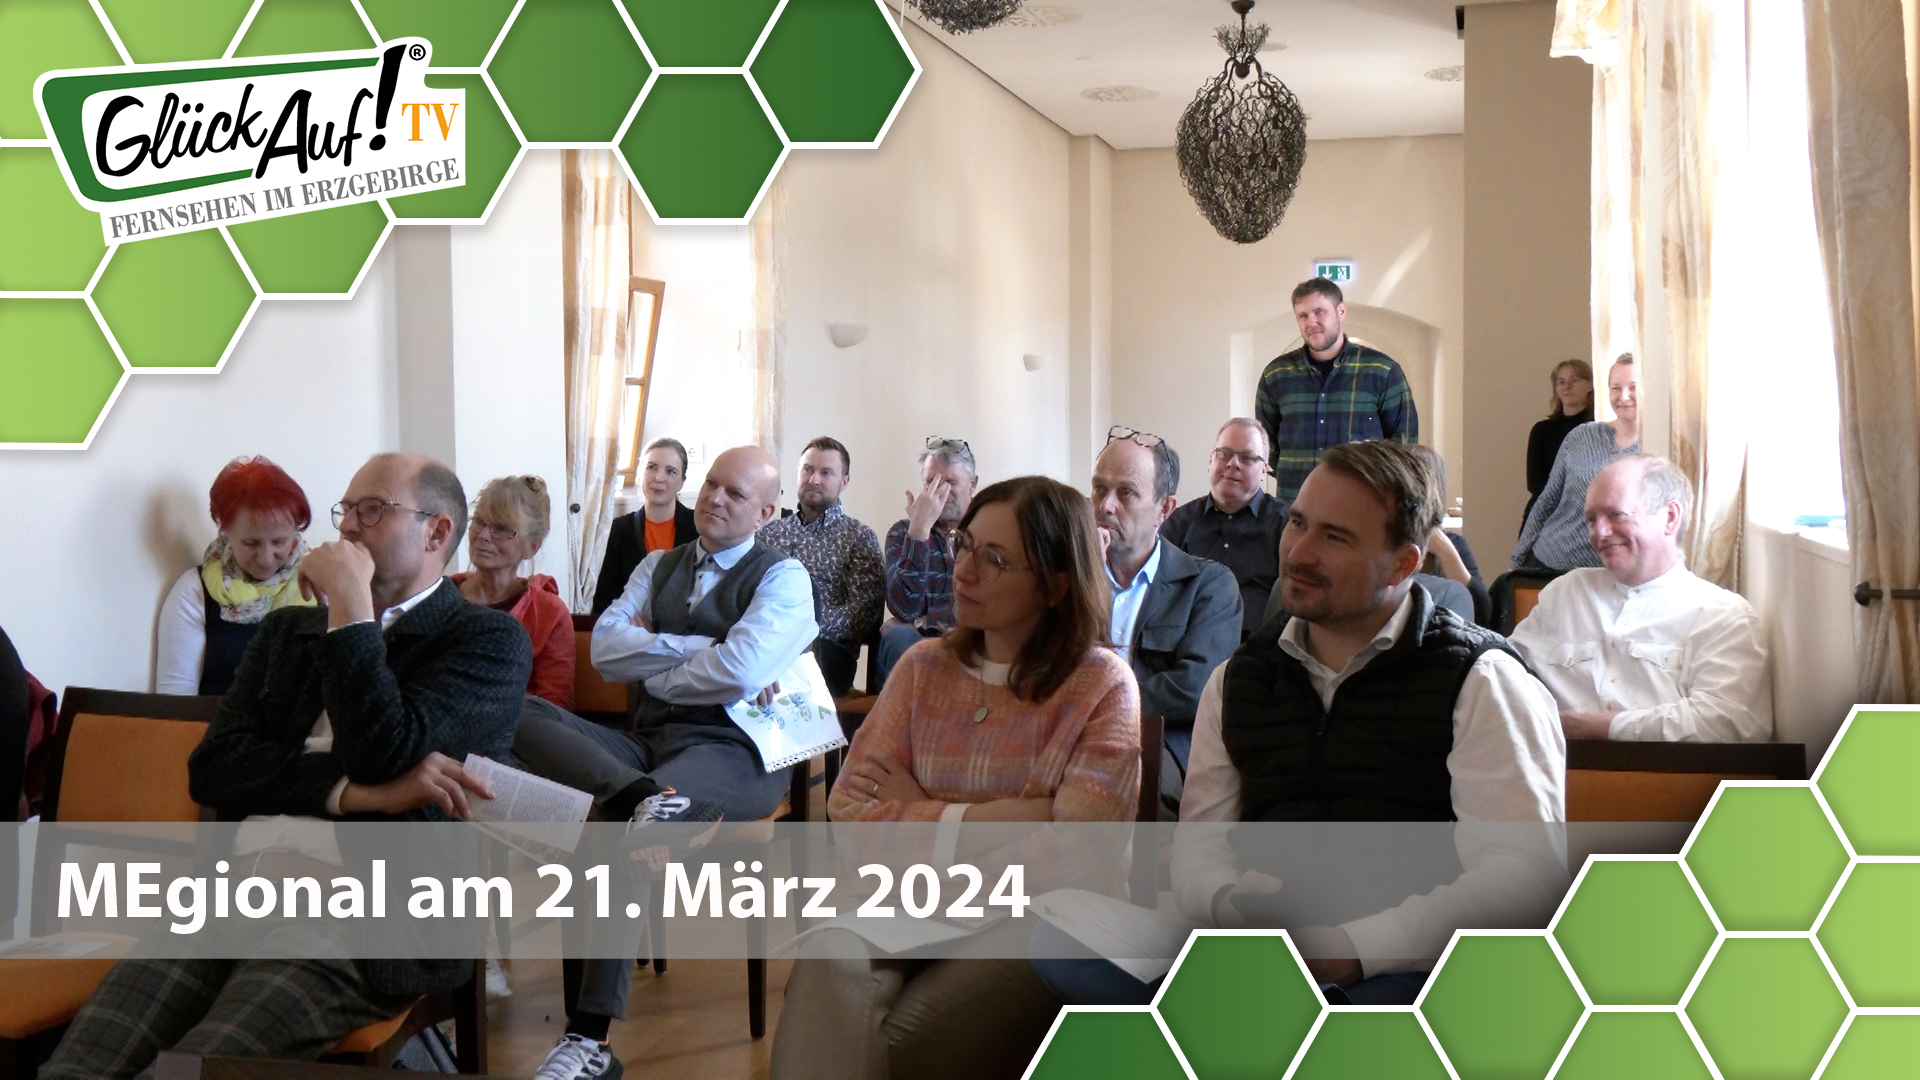 MEgional am 21. März 2024 mit dem Programm der Freiberger Sommernächte 2024 vorgestellt